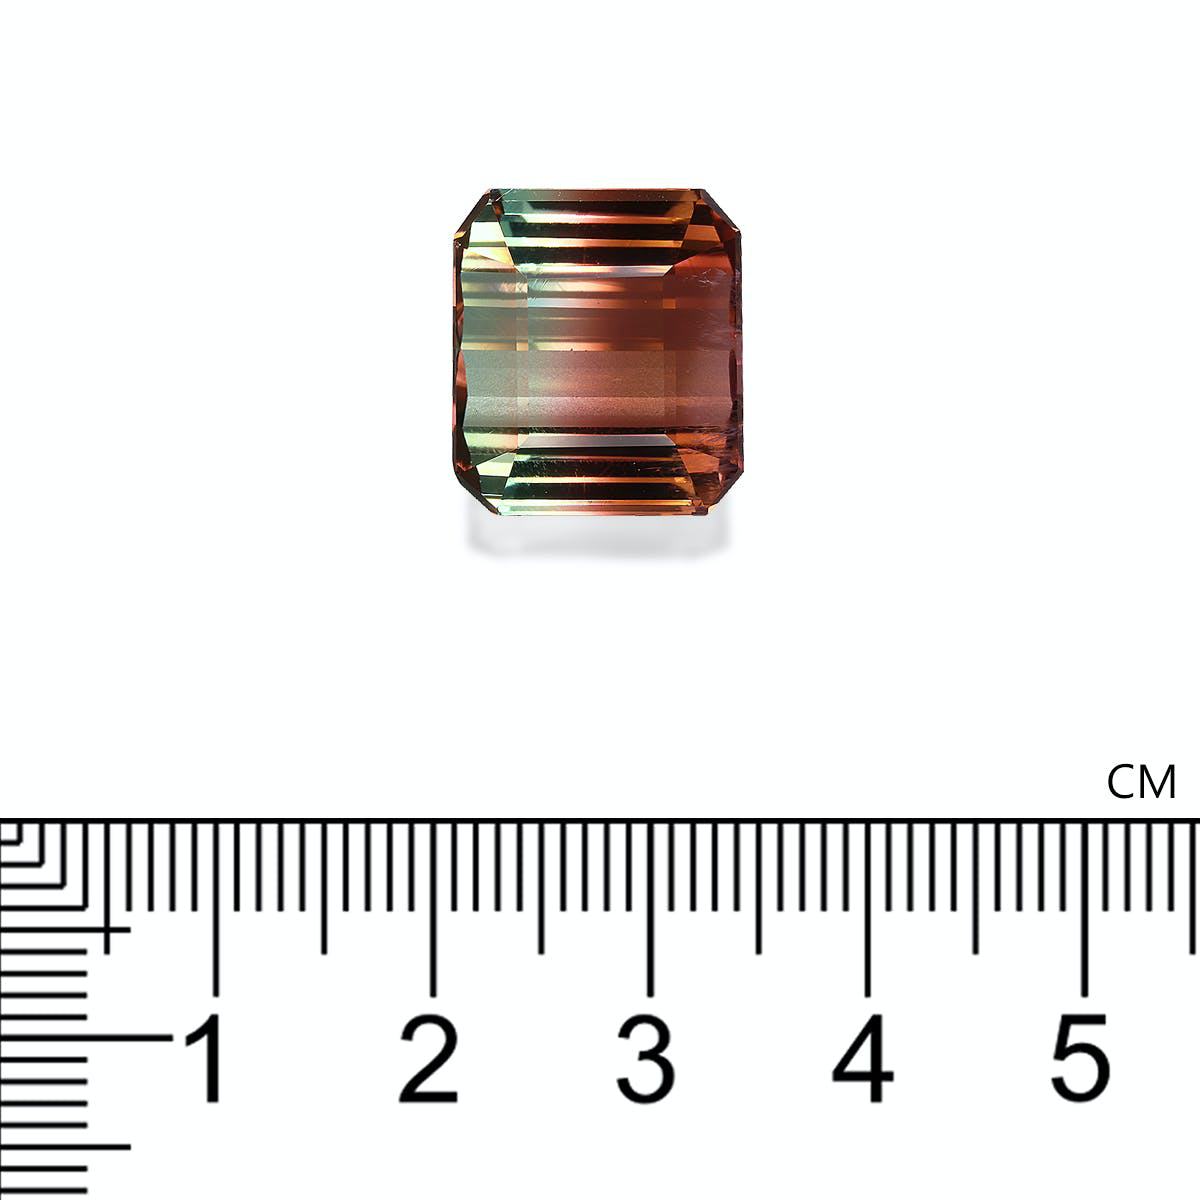 Picture of Bi Colour Tourmaline 22.48ct (BT0080)